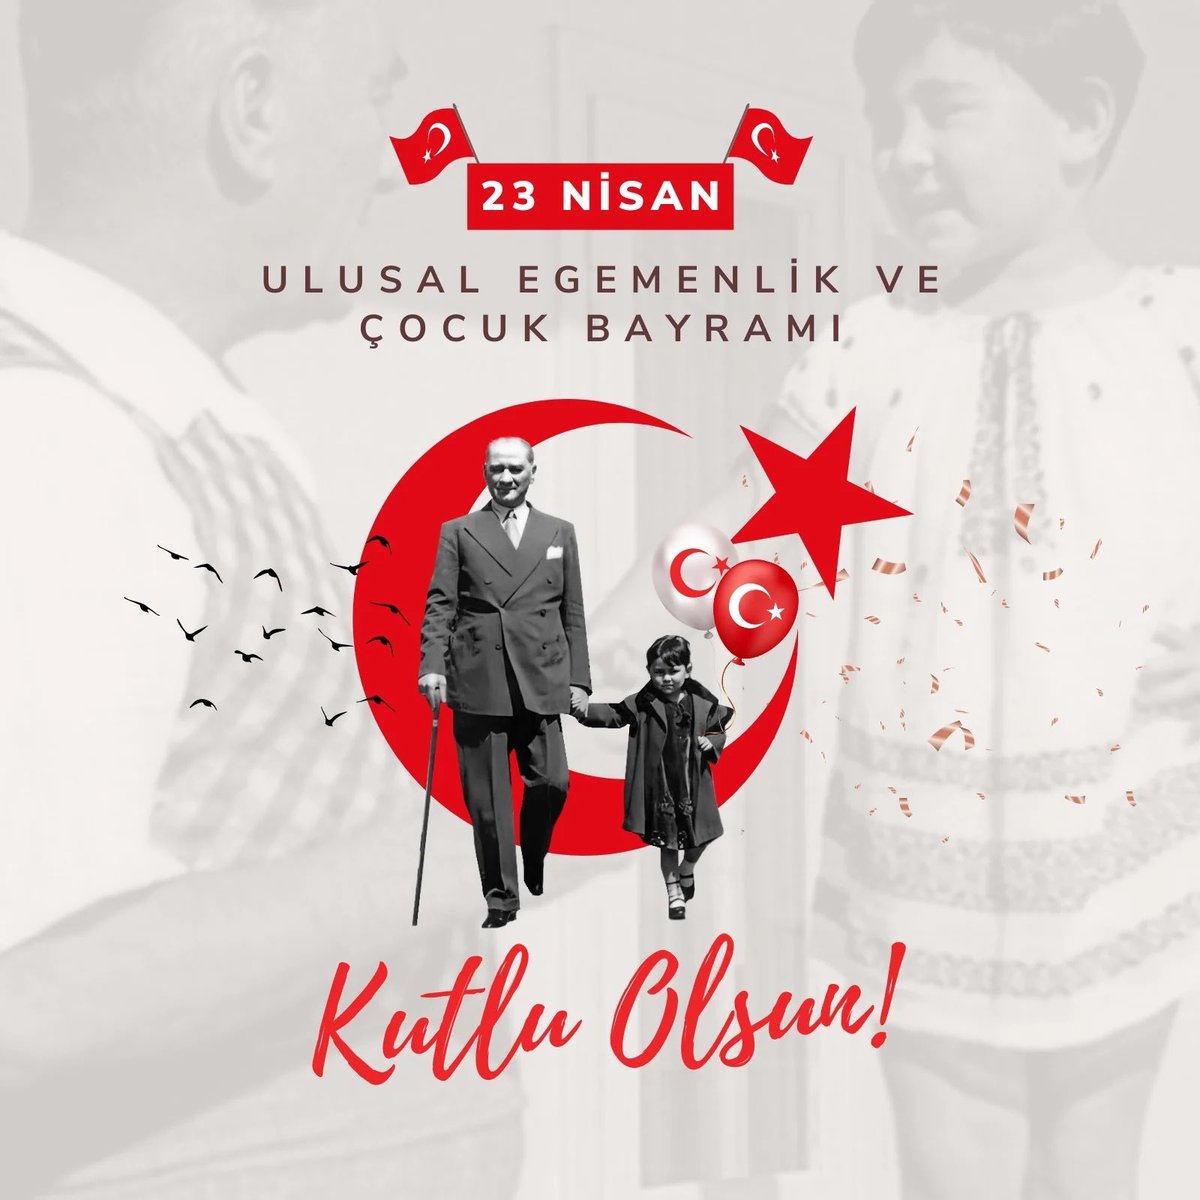 Bugün, ülkenin çocukları zaten öyle… Biz yetişkinler de onlar gibi şen ve mutlu olalım… Çünkü bugün Mustafa Kemal Atatürk ve silah arkadaşlarının gelecek nesilleri kuracak tüm çocuklara armağan ettiği ve dünyada bu anlamda kutlanan tek bayram… Yaşasın 23 Nisan… Yaşasın…